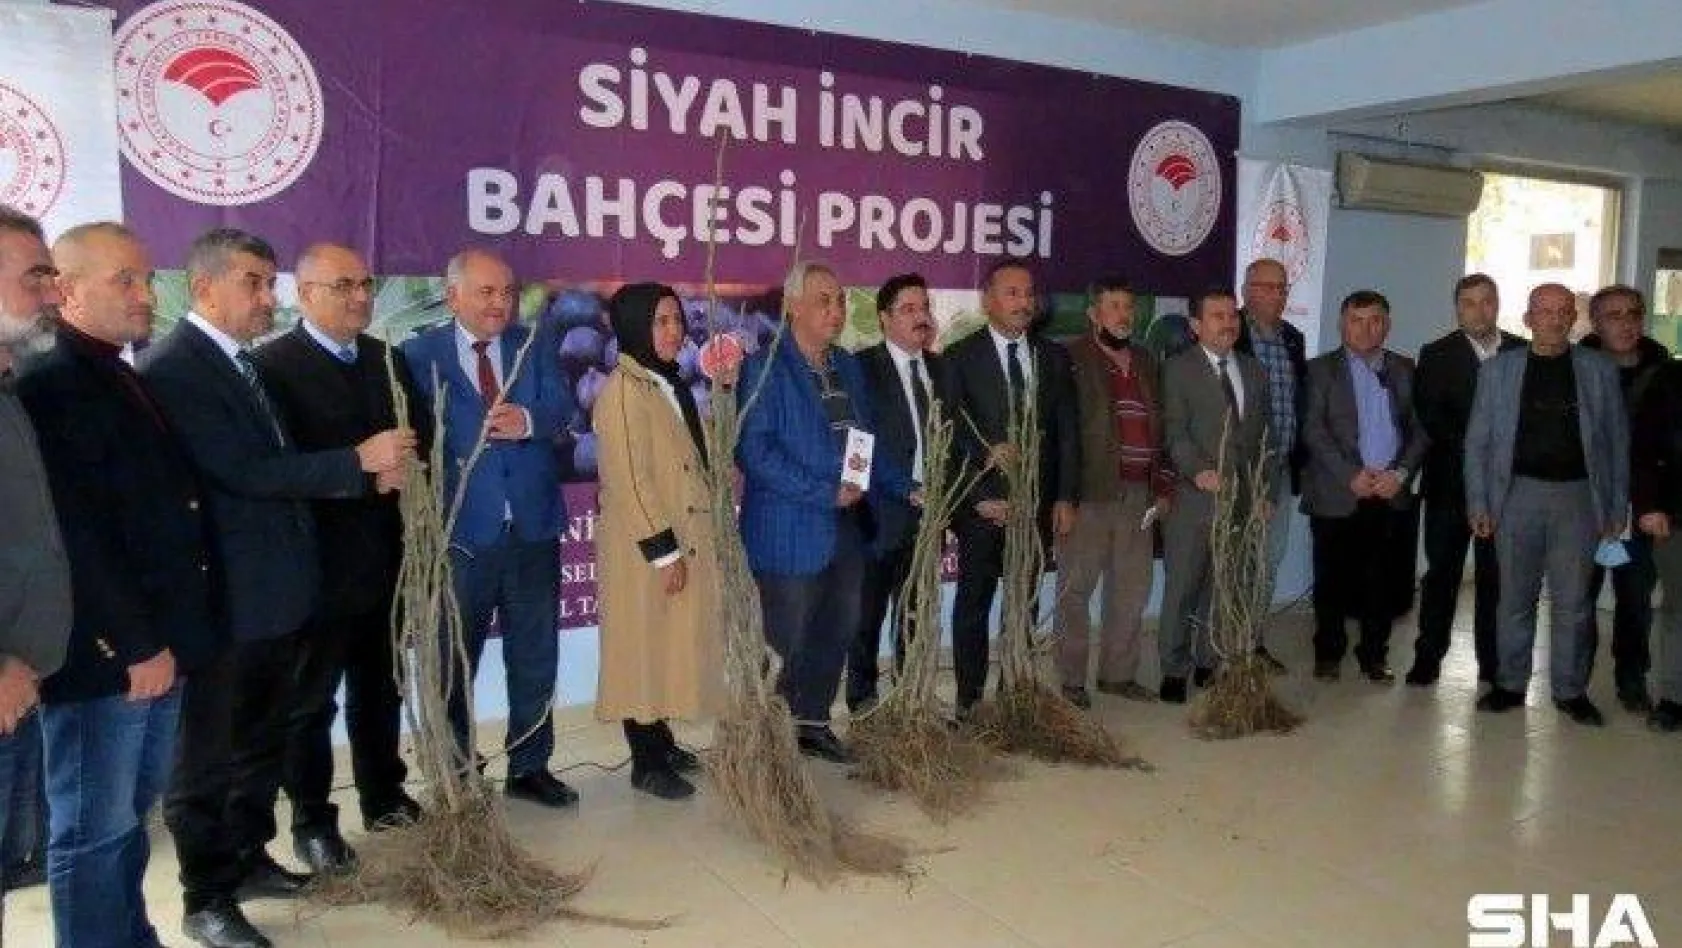 Mudanya'da siyah incir bahçesi projesi başladı